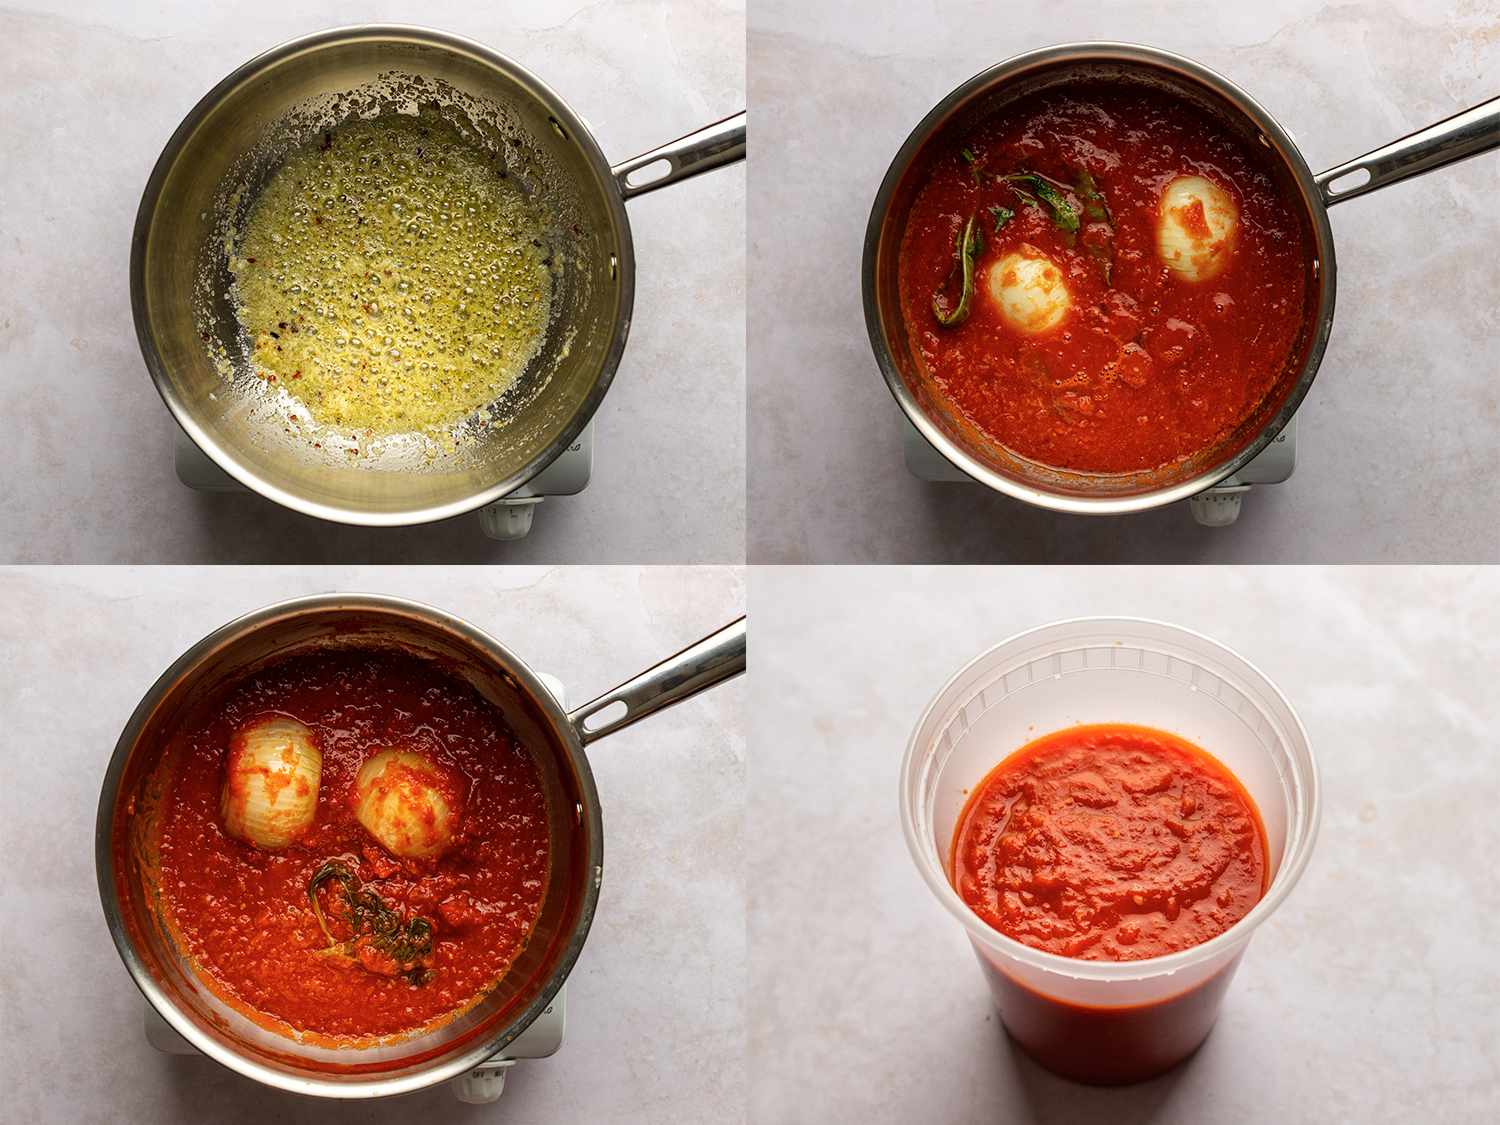 四幅图片的拼贴画。左上角的图片显示了黄油、油、大蒜、牛至、胡椒片和一大撮盐被煮到有香味但没有焦黄。右上方的图片显示了炖锅里的番茄泥、洋葱半段、罗勒枝和糖。左下角的图片显示西红柿现在煮熟了，直到减半。右下角的图片显示了一个夸脱大小的塑料容器里煮好的酱汁。